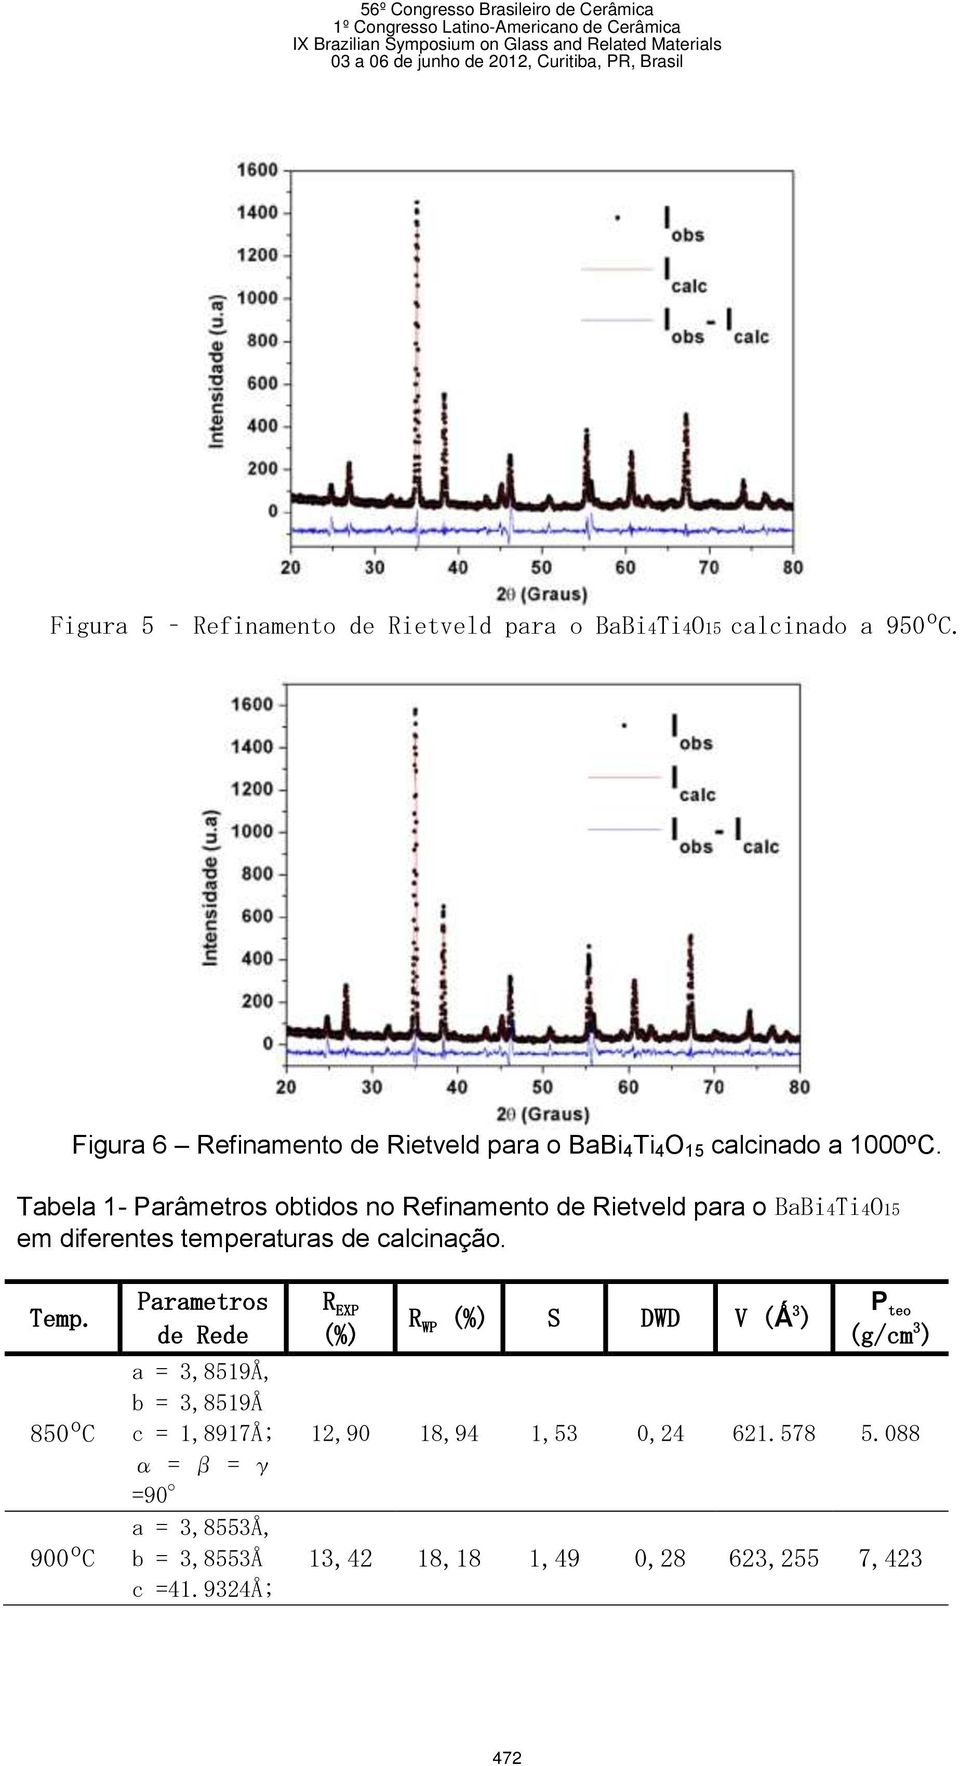 Tabela 1- Parâmetros obtidos no Refinamento de Rietveld para o BaBi4Ti4O15 em diferentes temperaturas de calcinação. Temp.